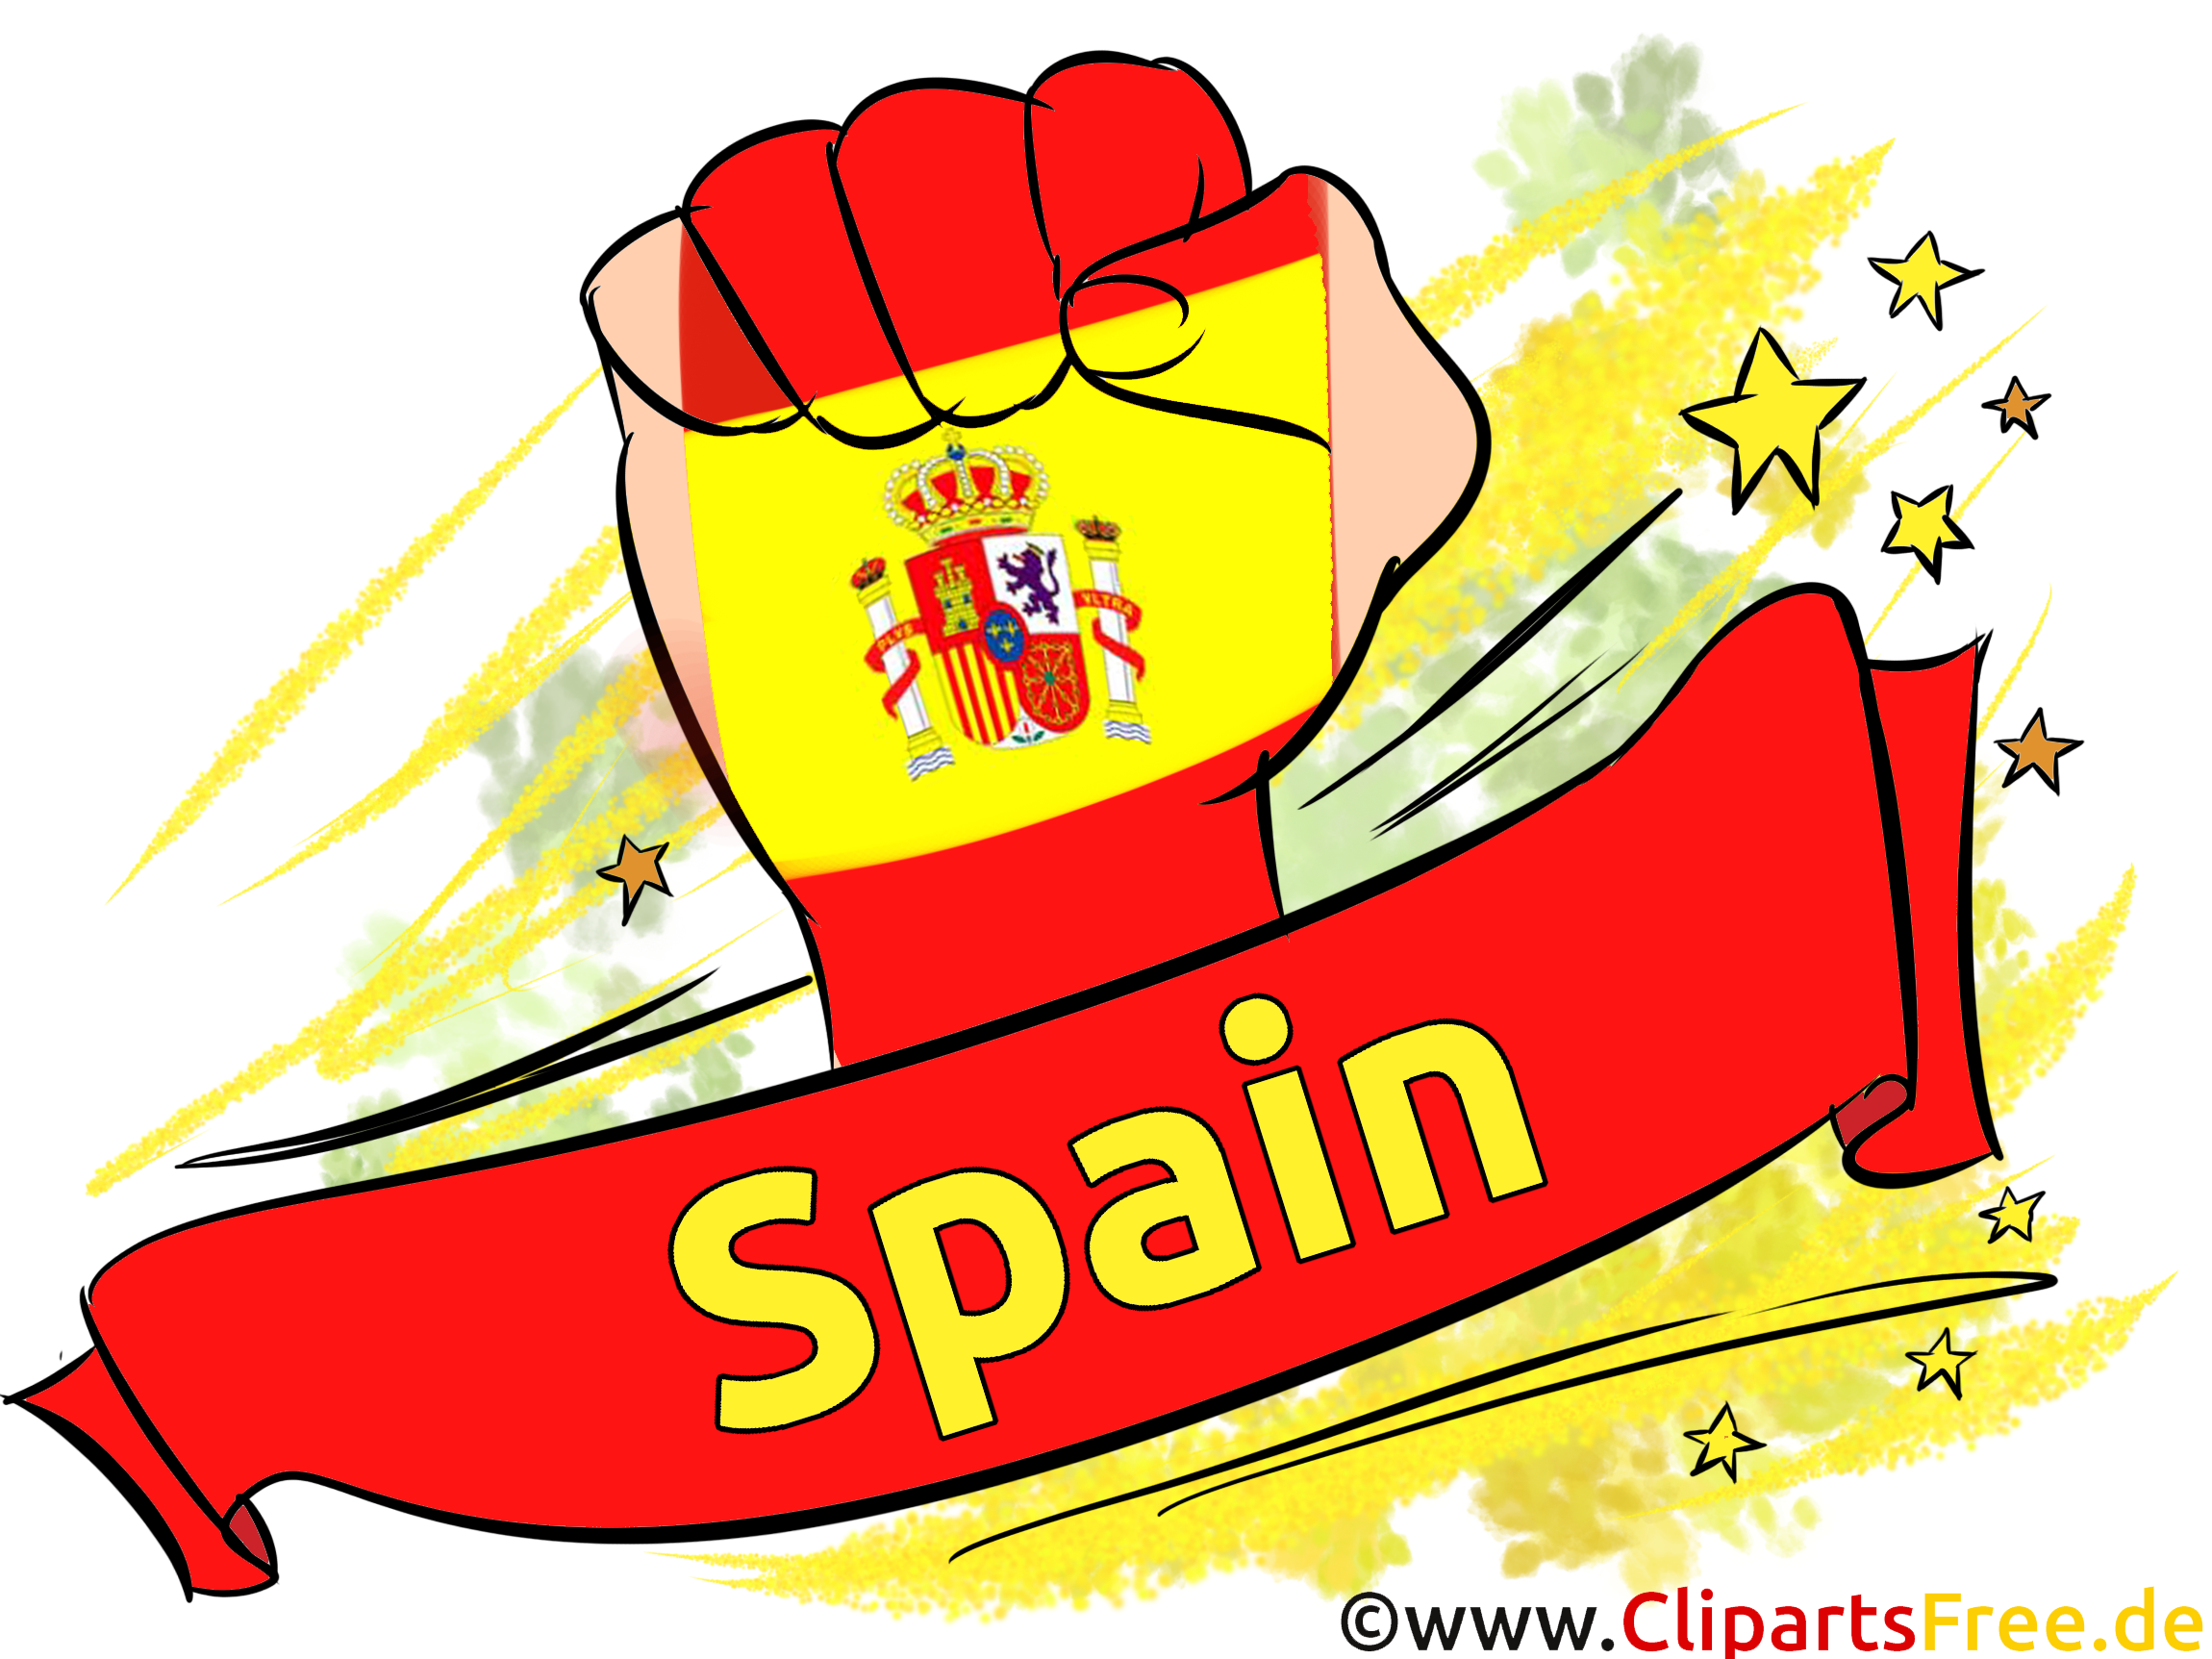 Joueur Espagne Football Soccer gratuit Image